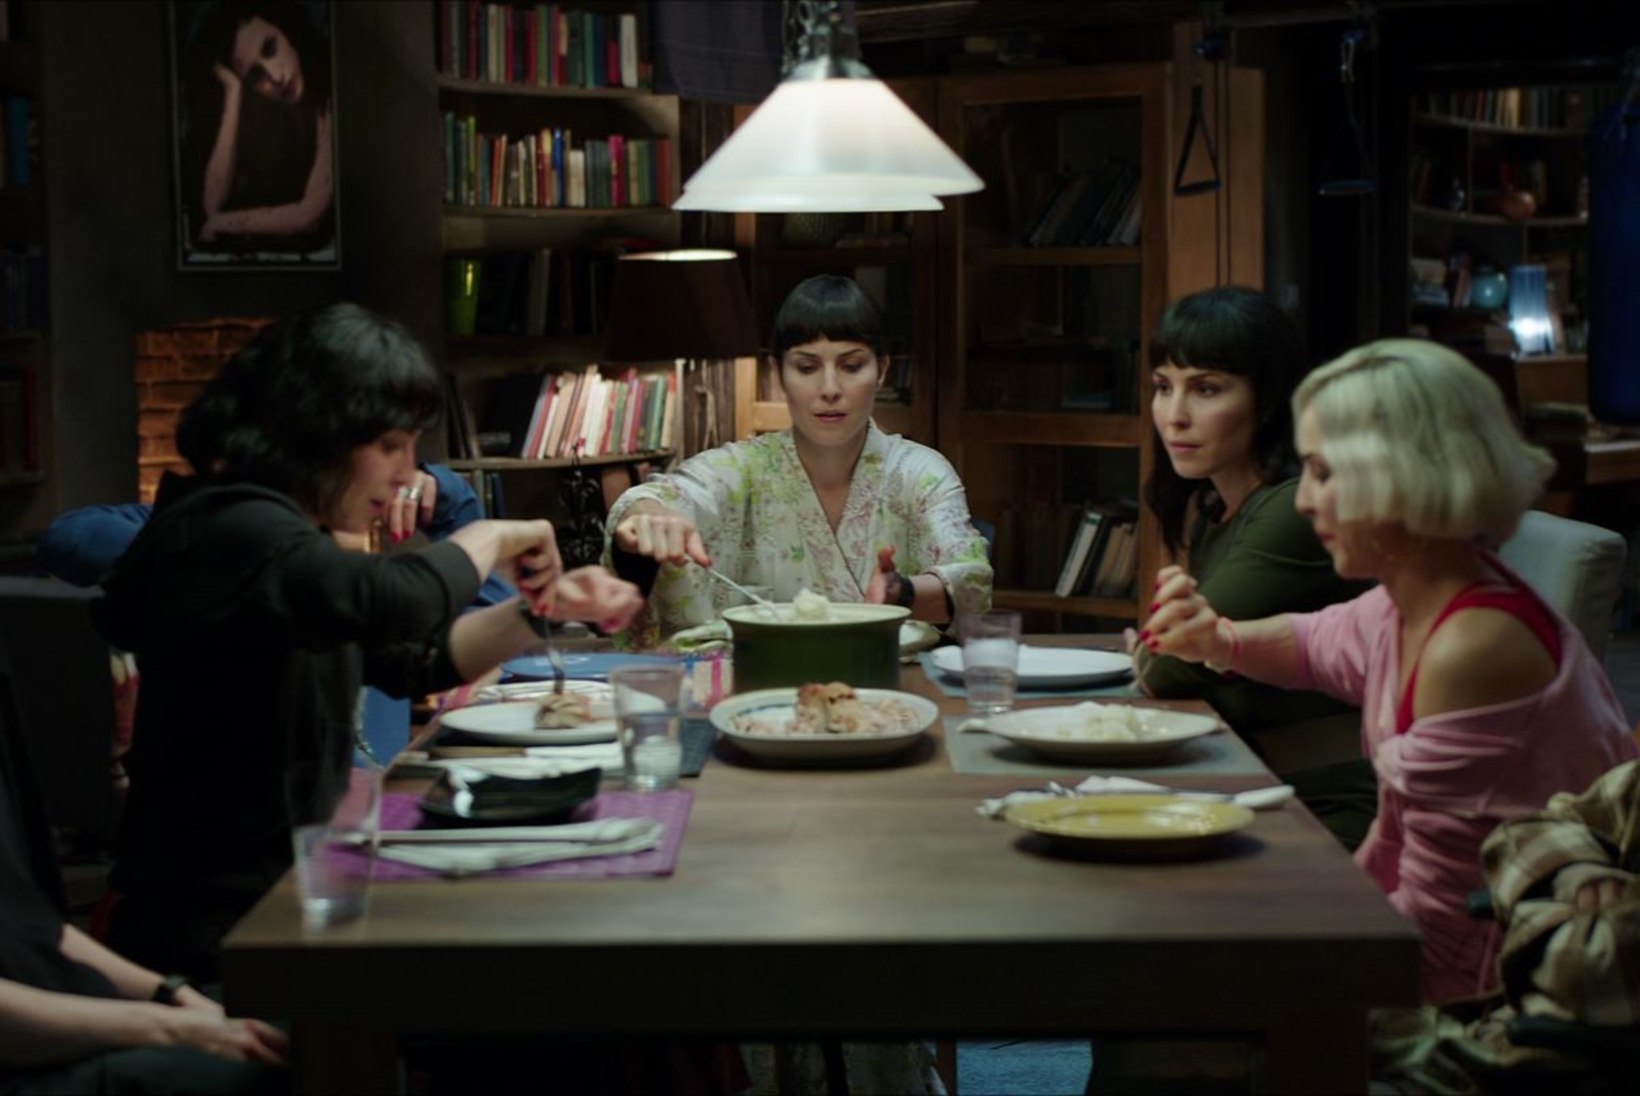 ARVUSTUS | „Seitsme õe saladus“ on nii rumal film, et selle üle on hea sõpradega nalja visata